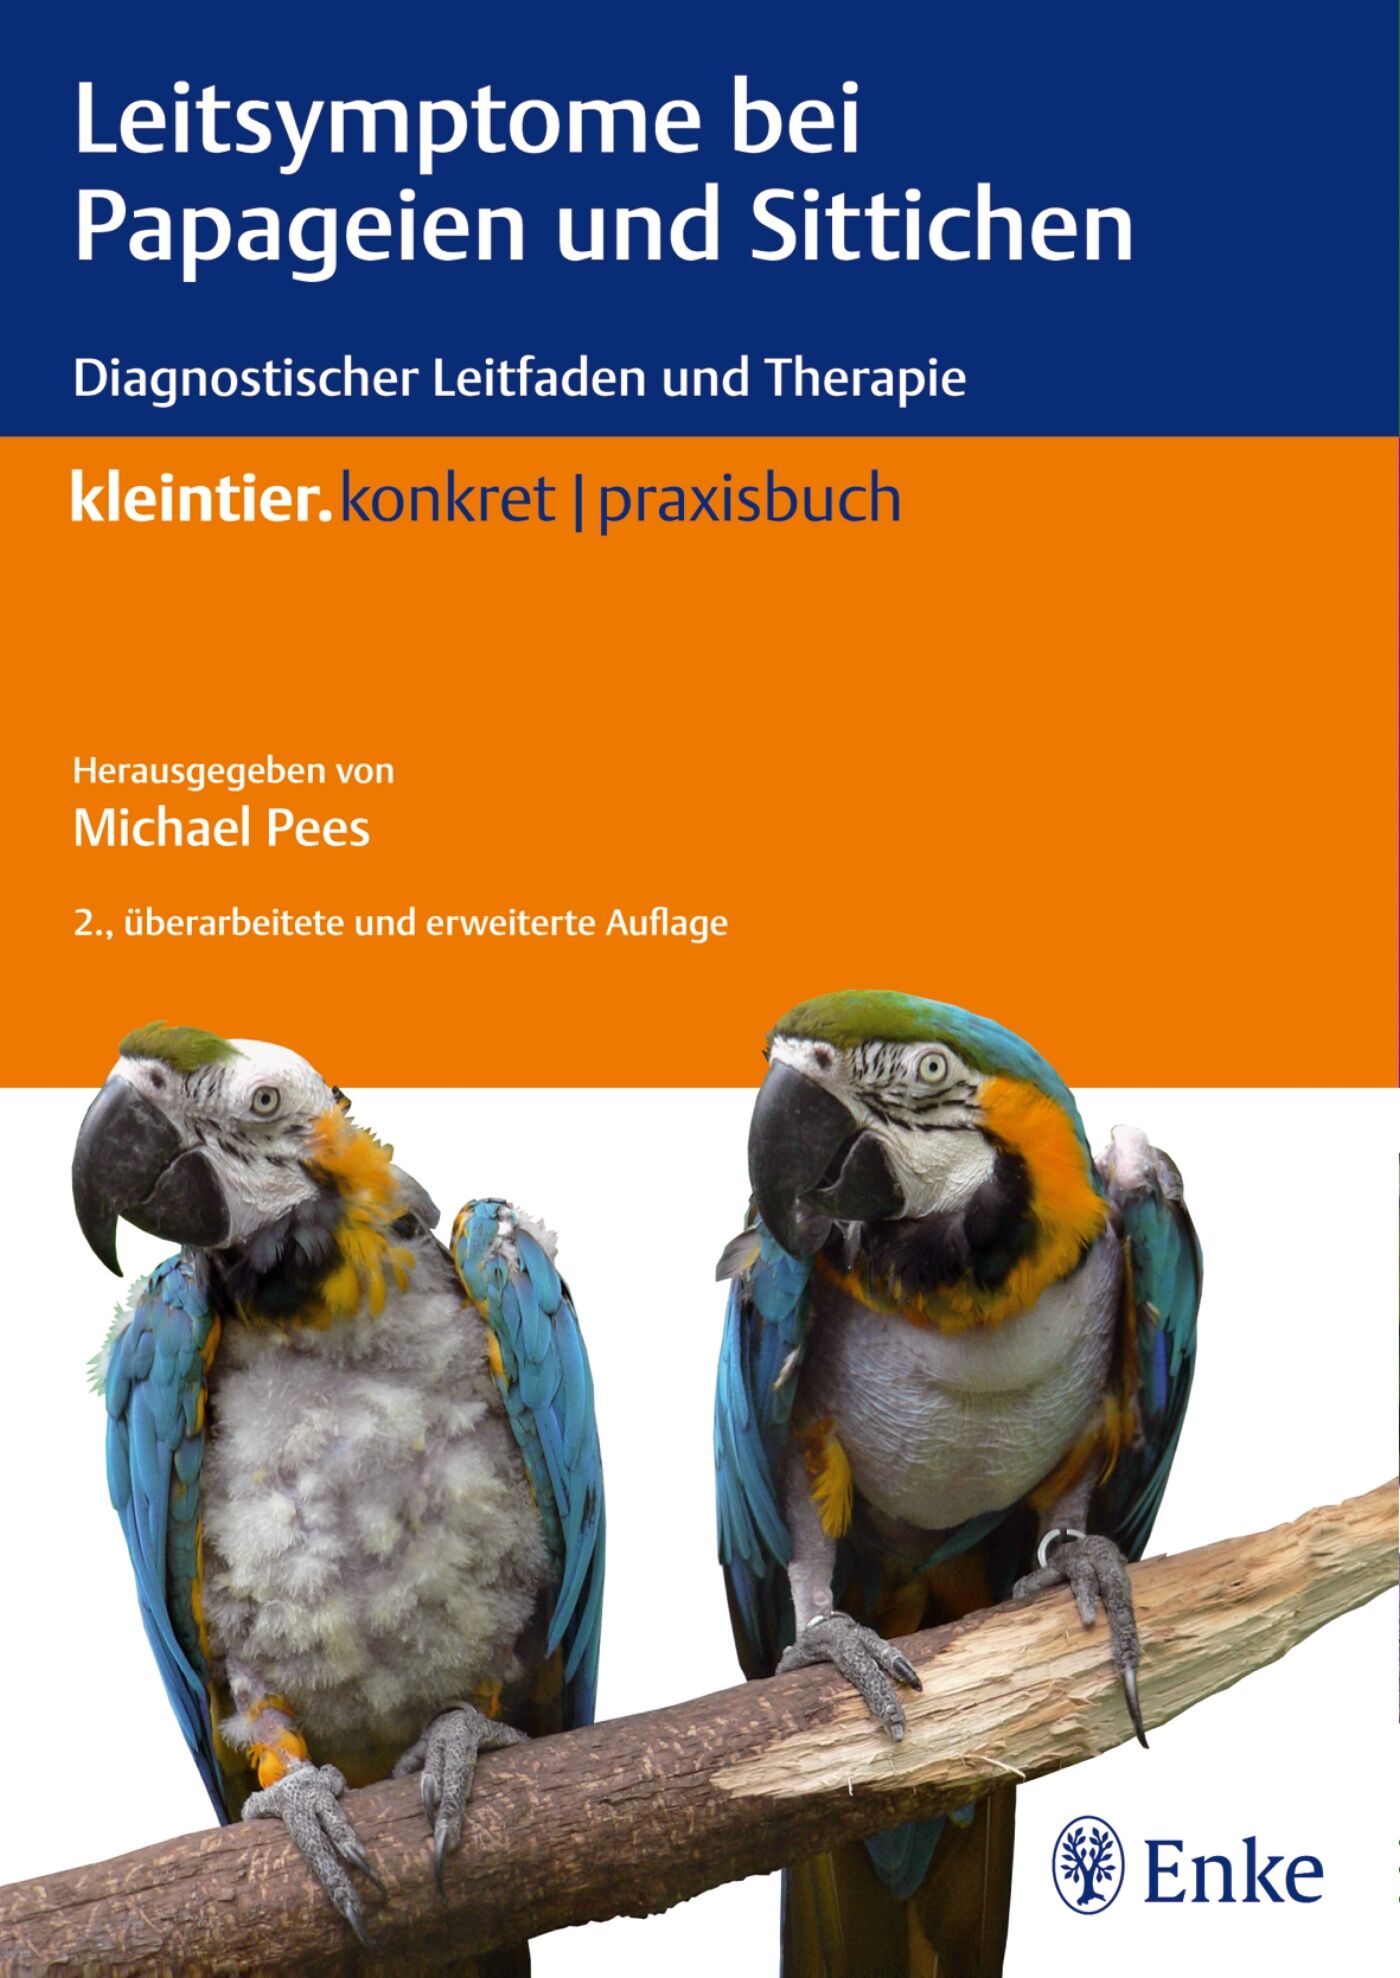 Leitsymptome bei Papageien und Sittichen, 9783830411871